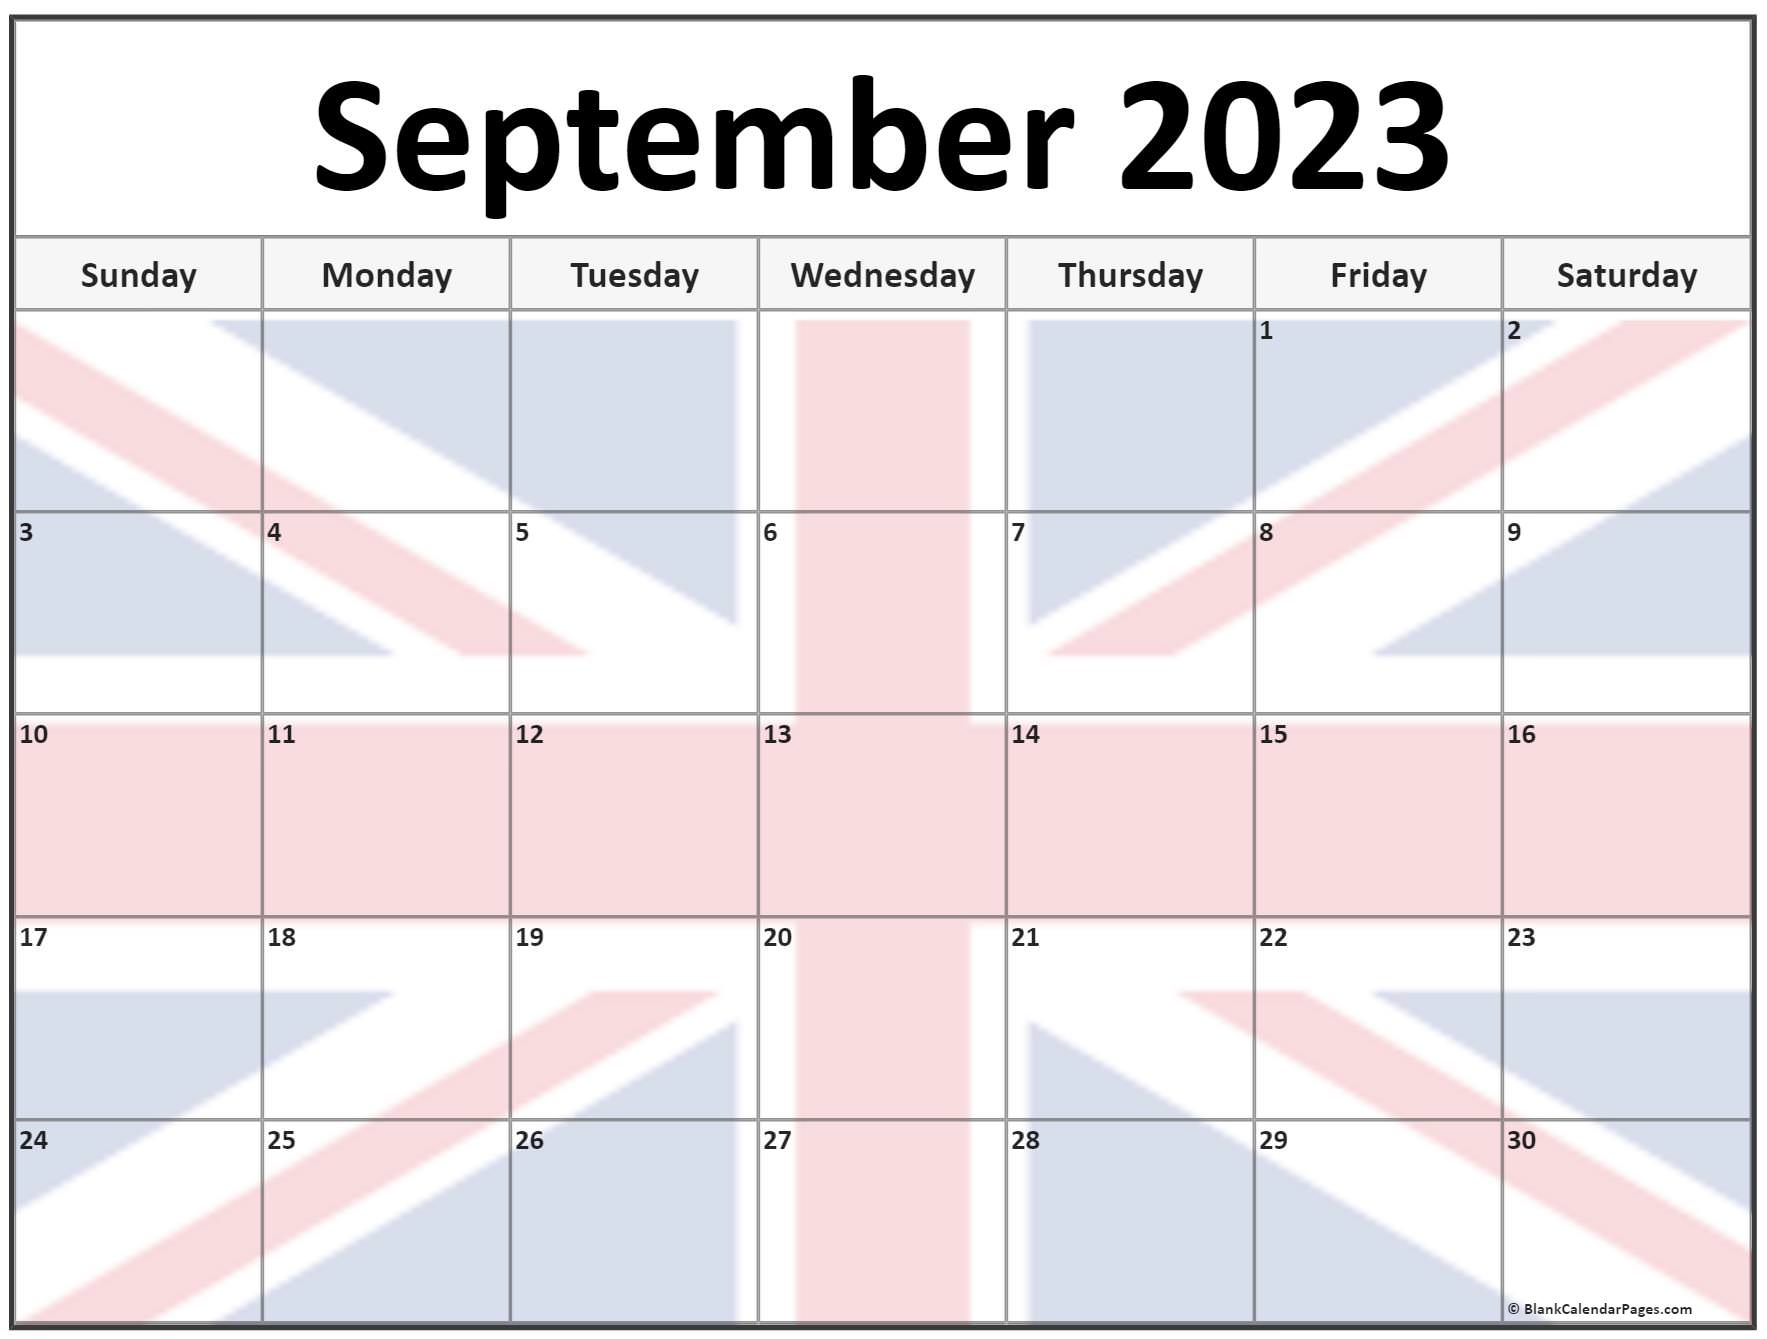 September 2023 Calendar Flag - Get Calendar 2023 Update